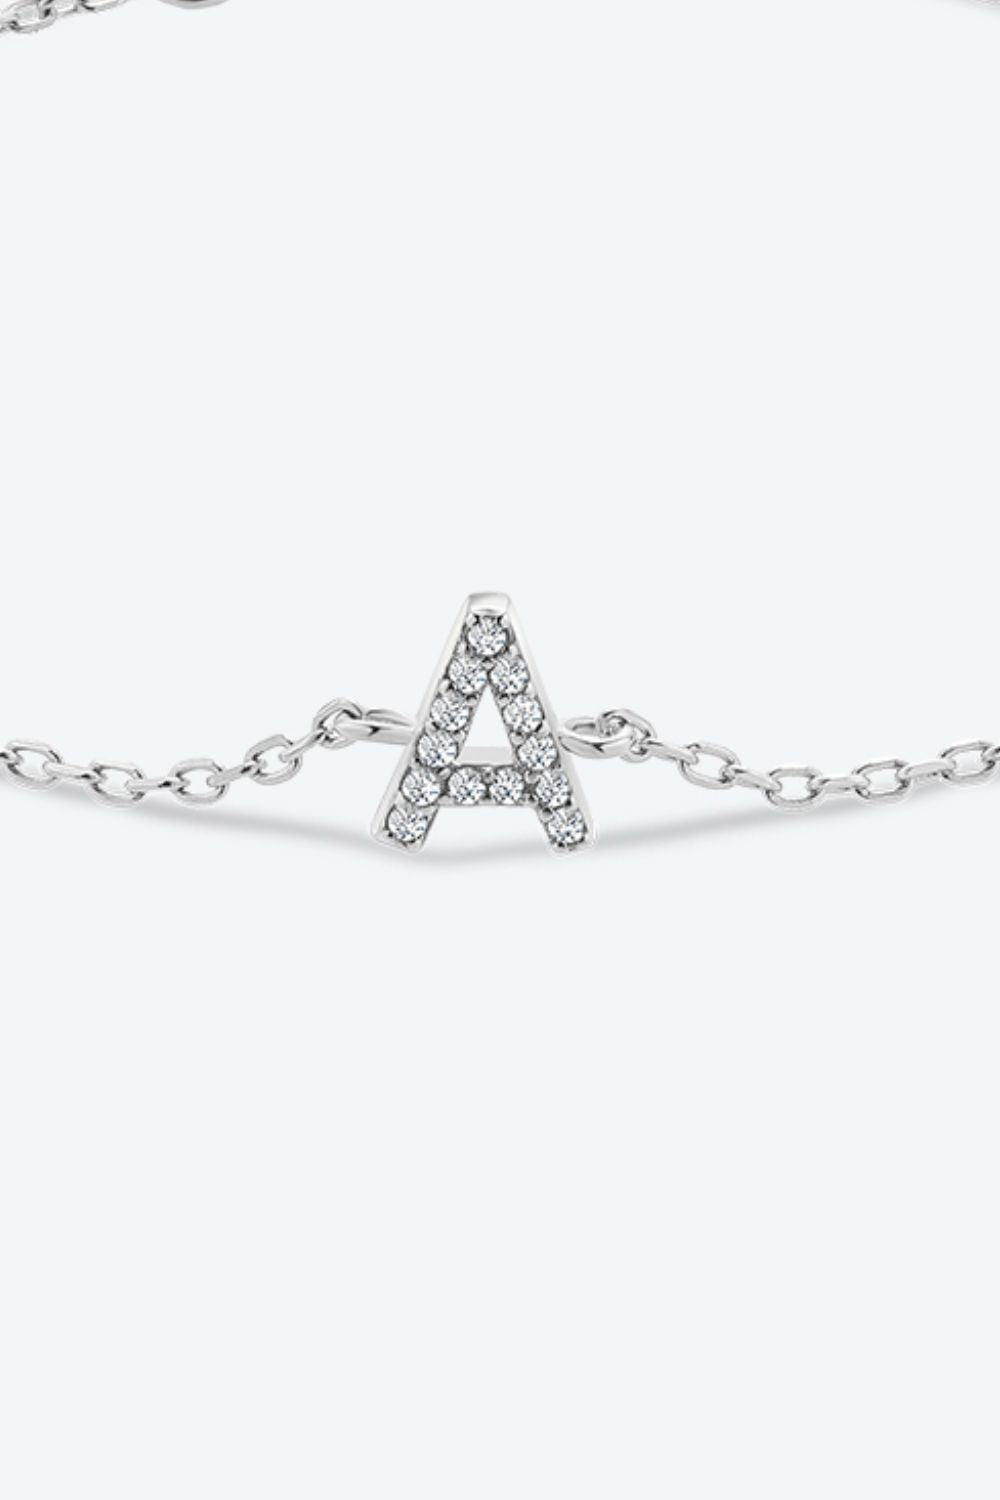 A To F Zircon 925 Sterling Silver Bracelet - Women’s Jewelry - Bracelets - 5 - 2024